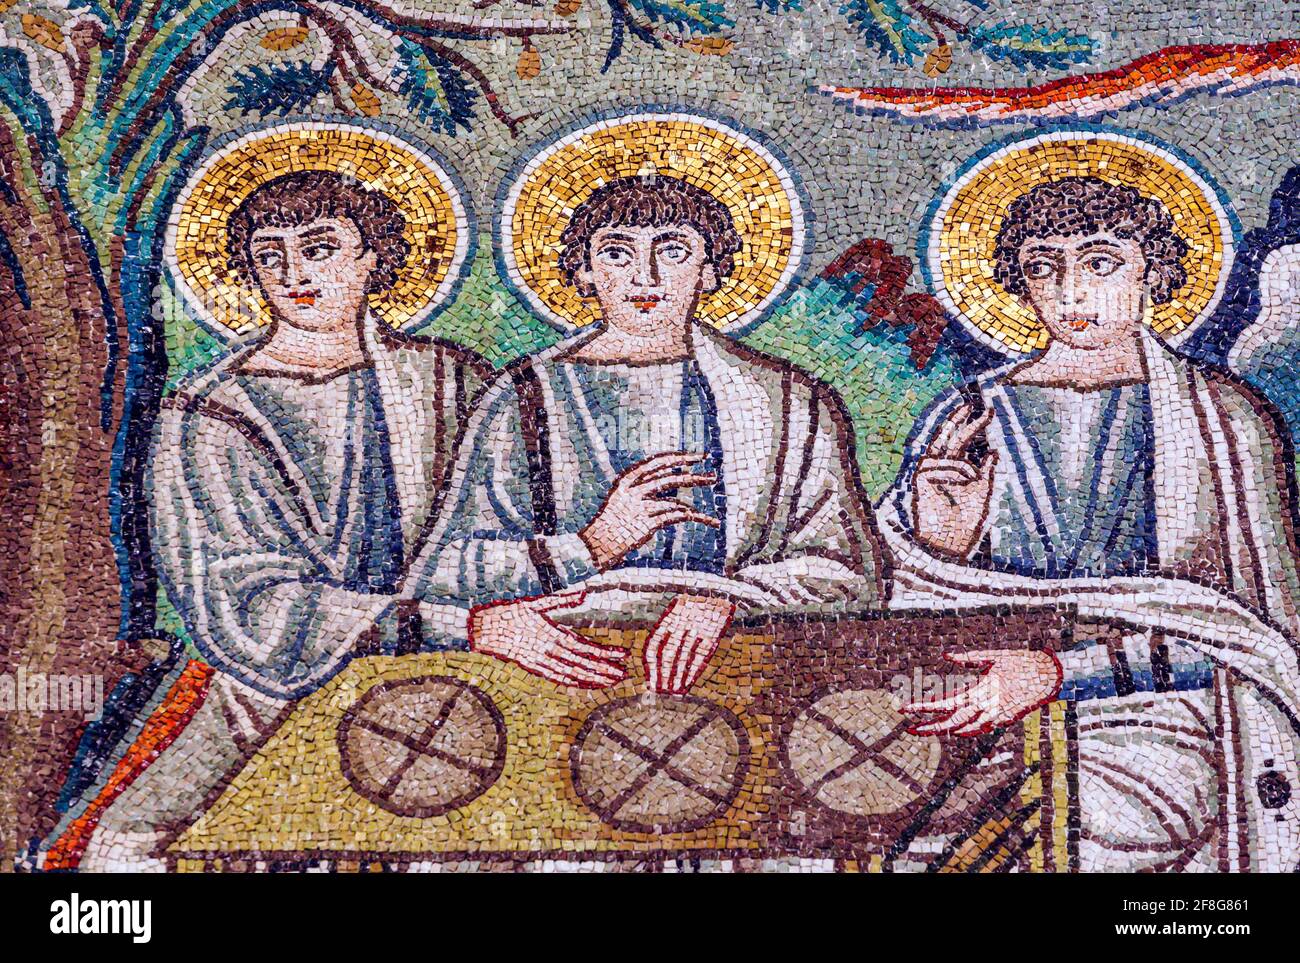 Ravenna, Provinz Ravenna, Italien. Mosaik in der Basilika San Vitale von drei Engeln, die Abraham mit einer Botschaft Gottes besuchten. 6. Jahrhundert. Die frühen Stockfoto